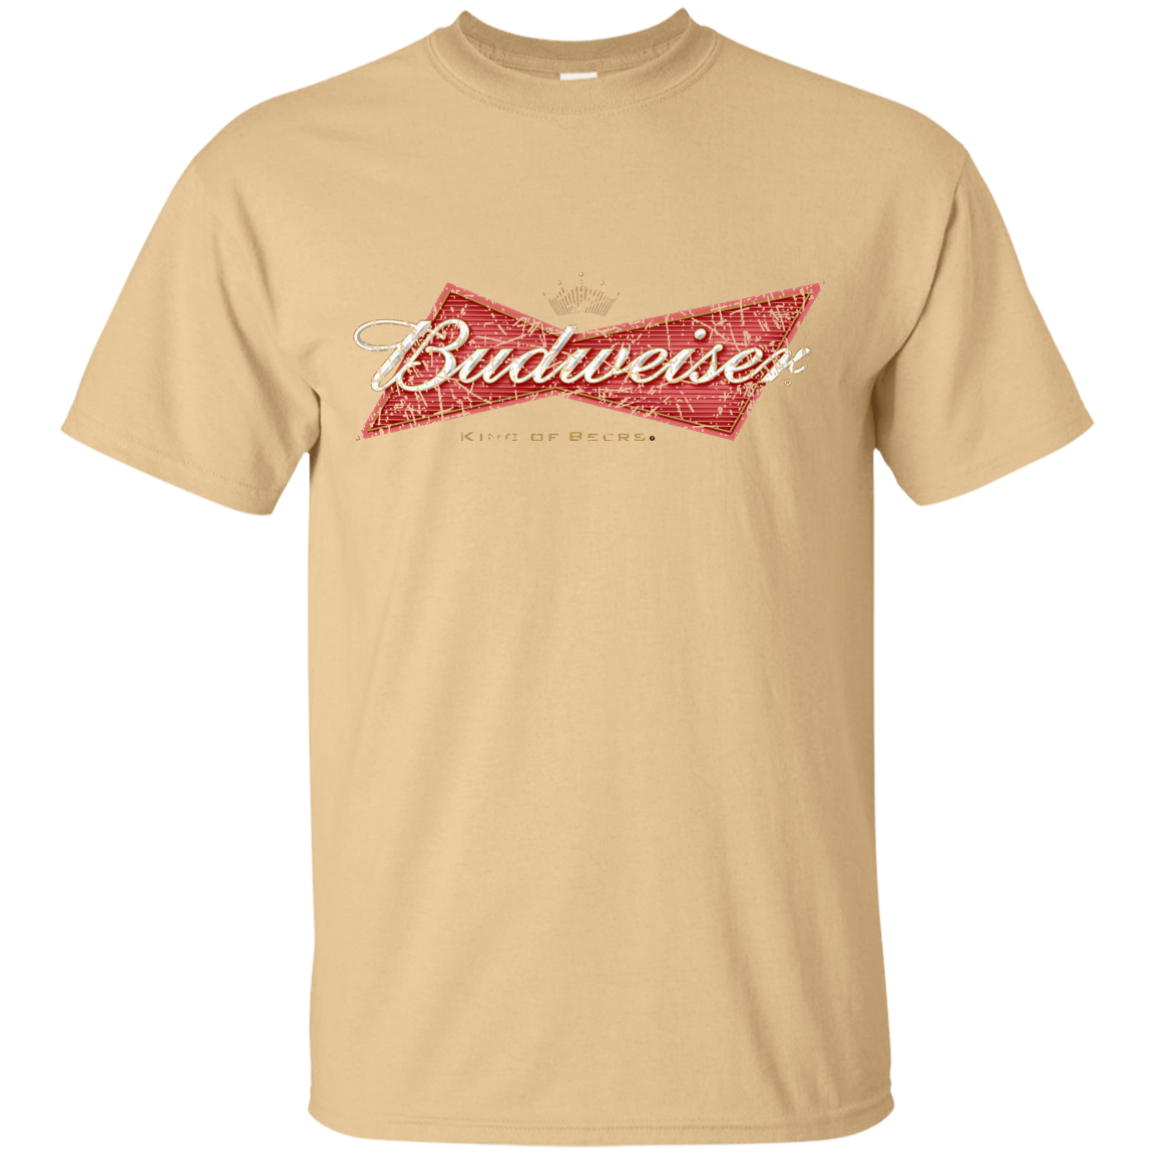 Budweiser Beer T-Shirt Color Custom Designed Worn Pattern Label